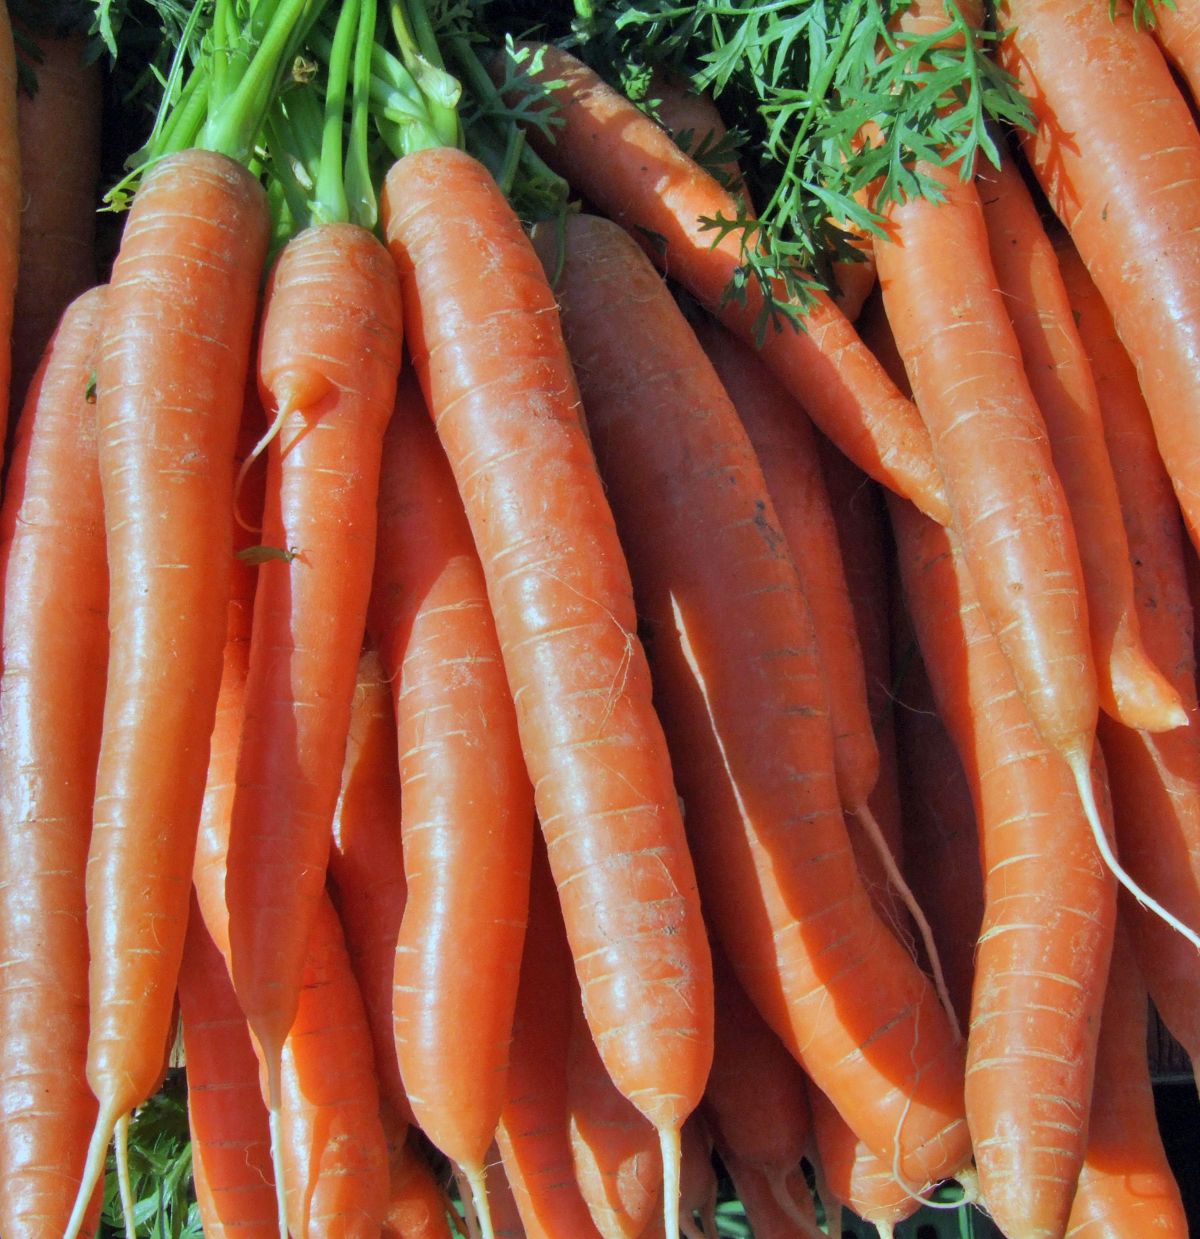 Die meisten Karotten, die wir essen sind orange. Die ersten domestizierten Möhren waren hingegen lila und gelb. 
